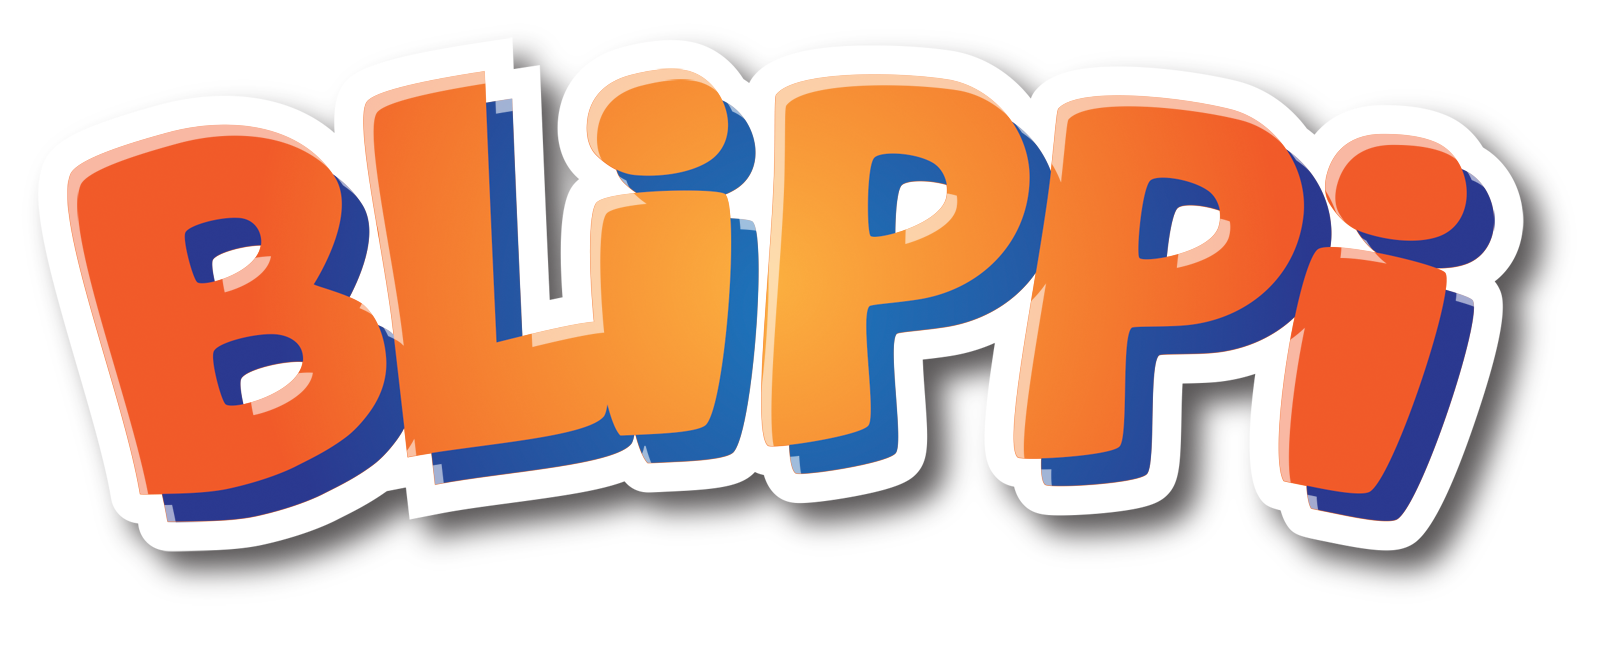 Blippi.com/FAQ - Where does Blippi live? Who is Blippi?